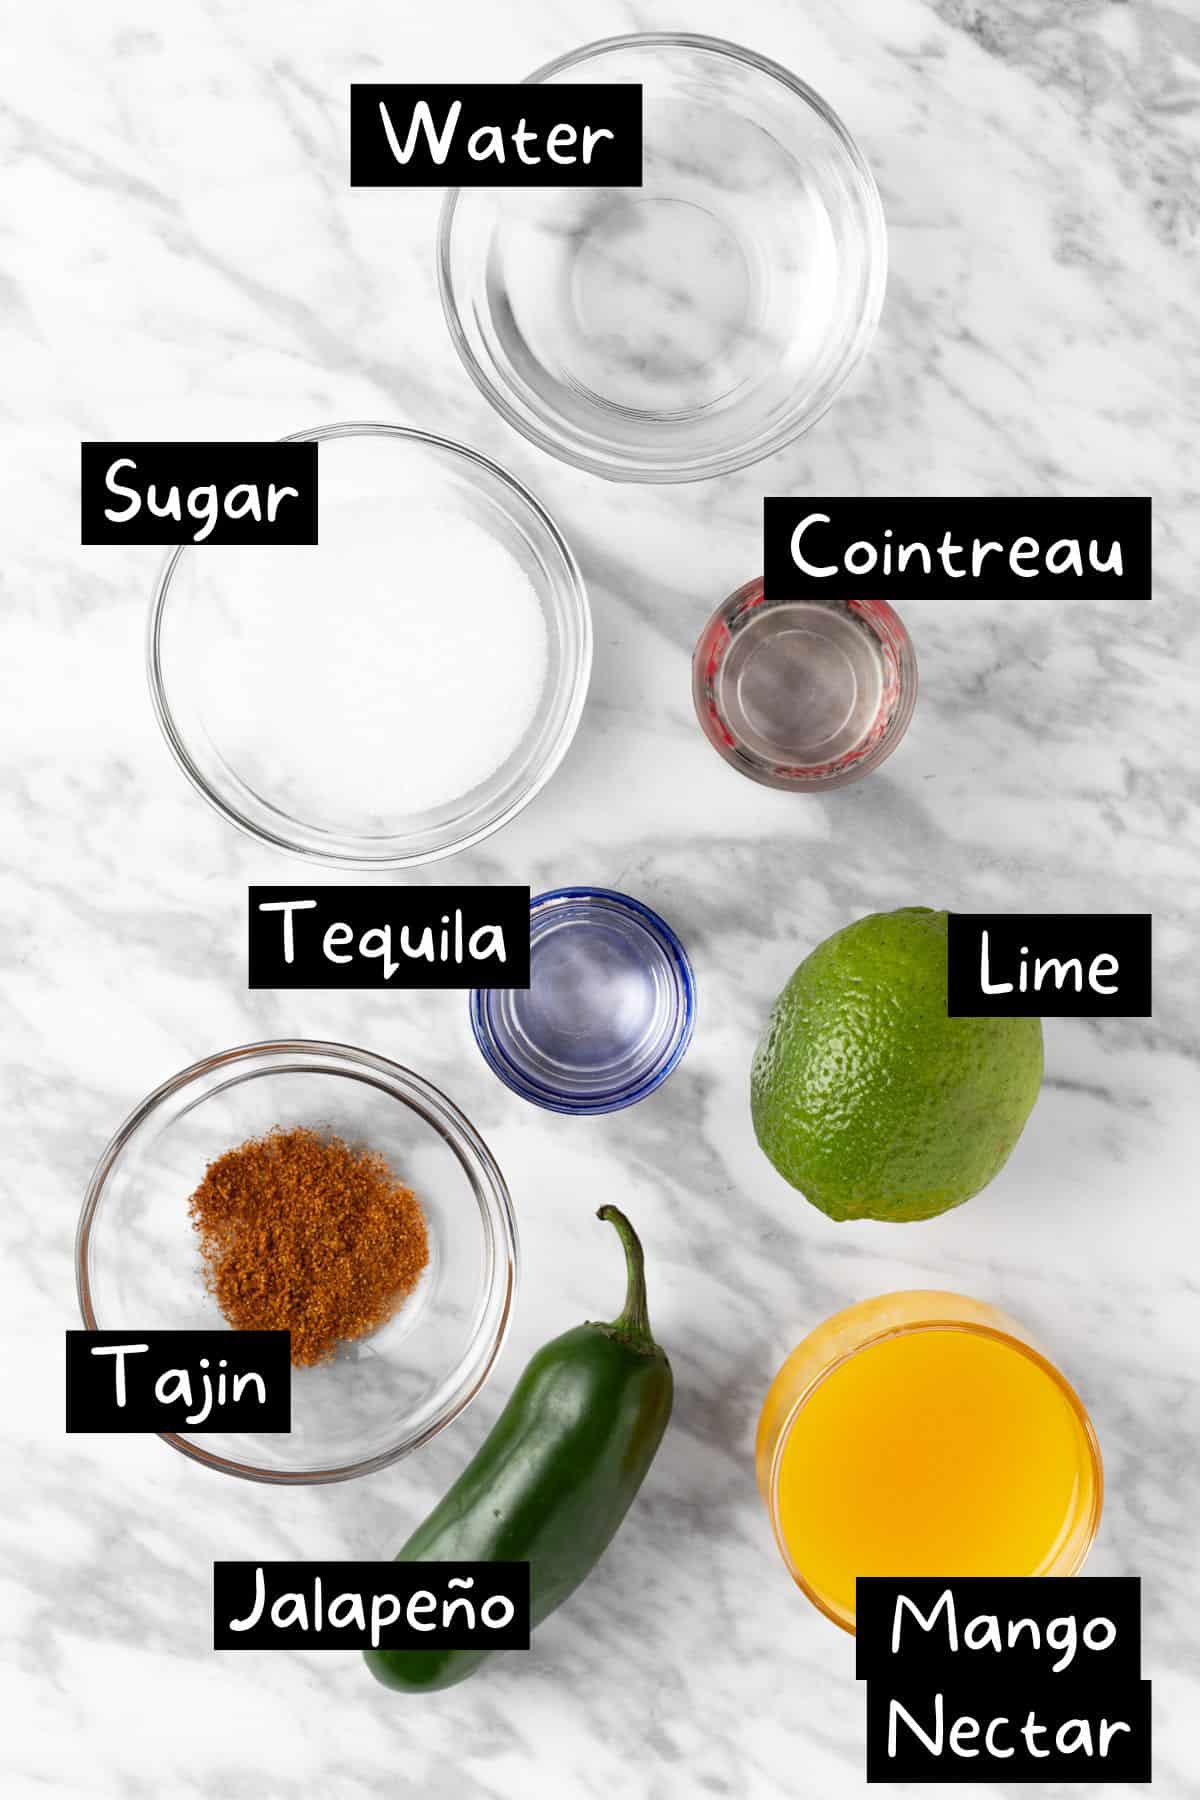 The ingredients to make the mango jalapeño margarita.